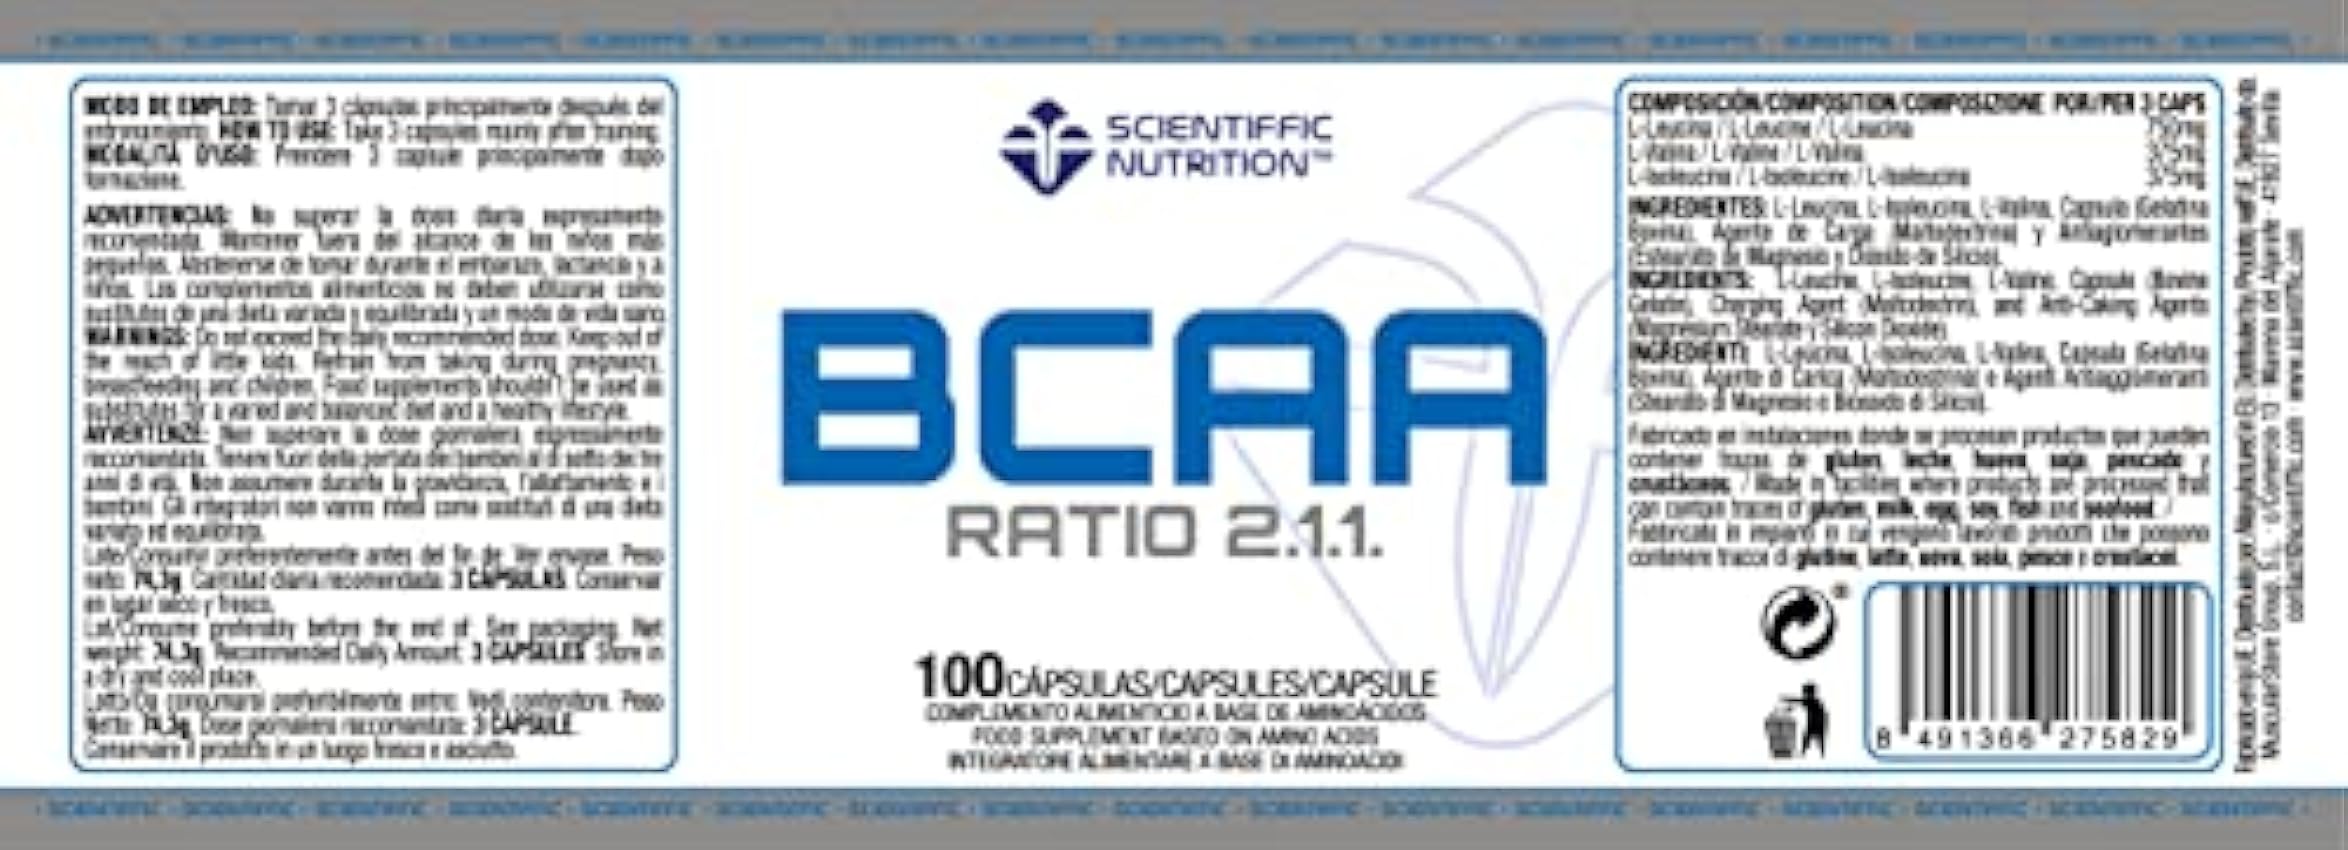 Scientiffic Nutrition - BCAA, Aminoácidos Esenciales Ramificados en Polvo en Proporción 2:1:1, Mejora la Recuperación Muscular y el Aumento de Masa Muscular - 100 Cápsulas. kYissUWC